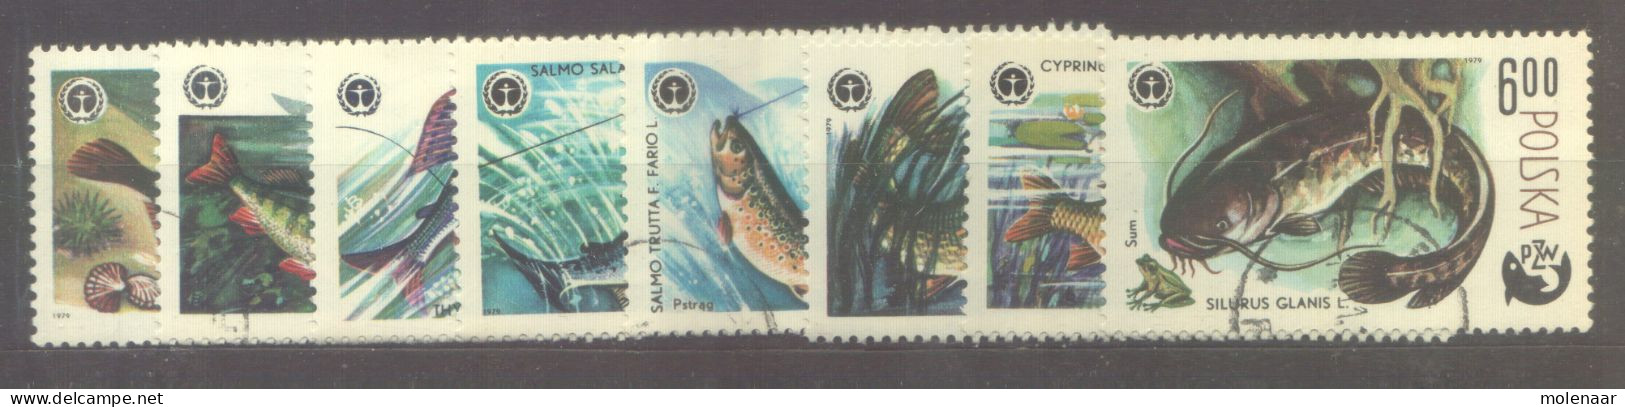 Postzegels > Europa > Polen > 1944-.... Republiek > 1971-80 > Gebruikt  2617-2624 (12176) - Usados